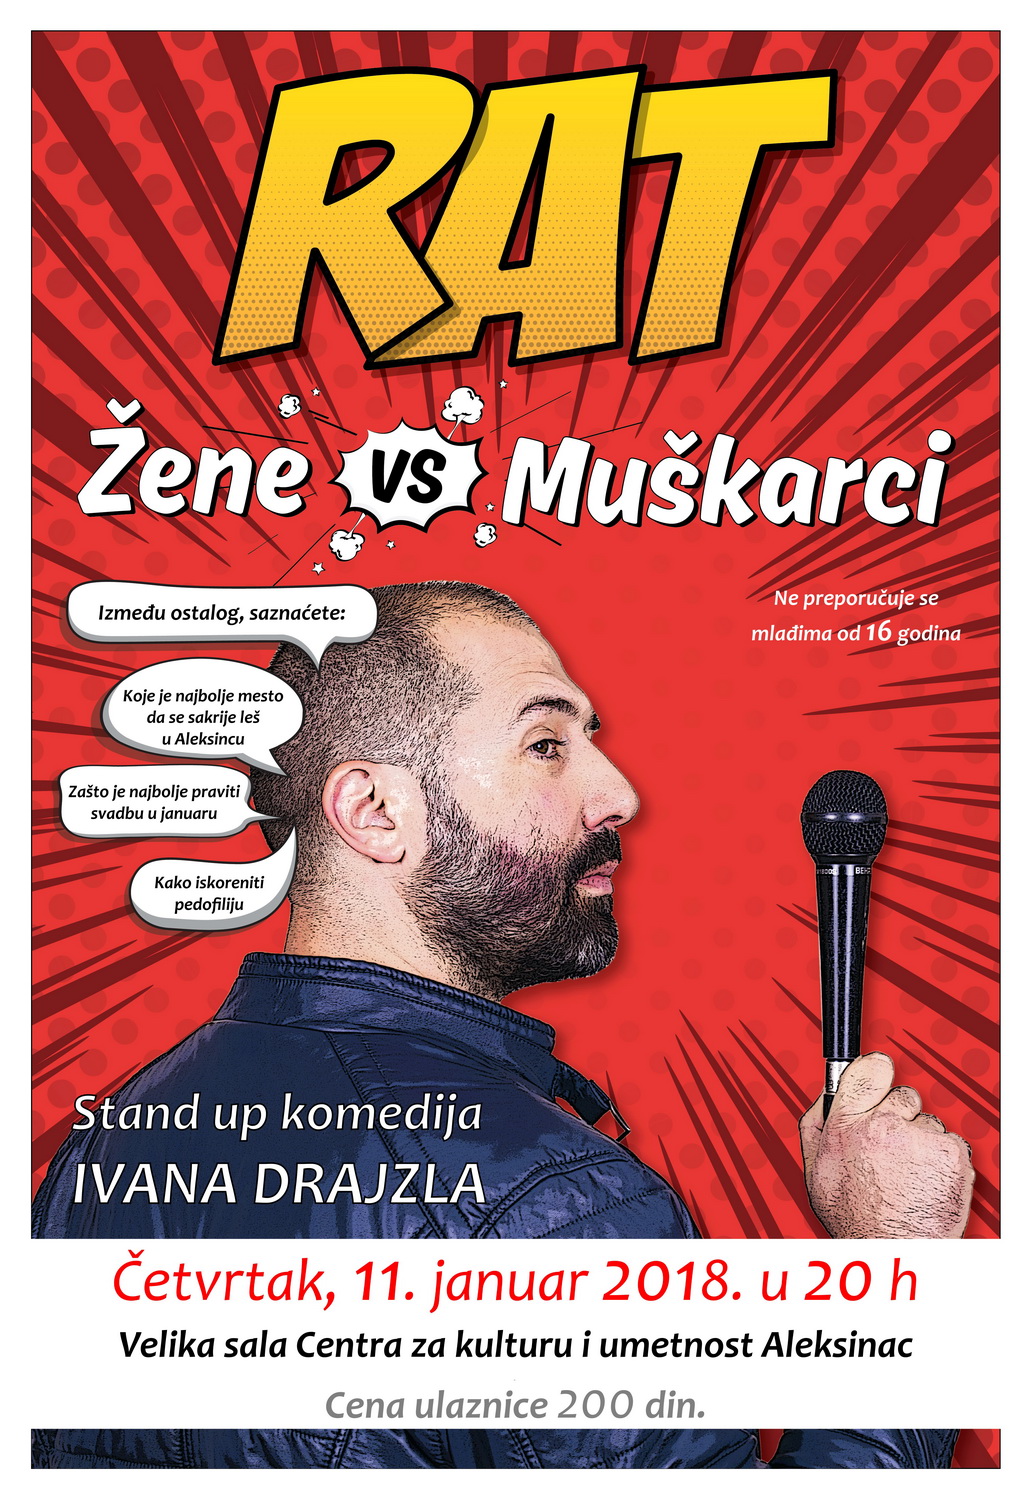 Stand up komedija Ivana Drajzla <br>„RAT Žene vs Muškarci”